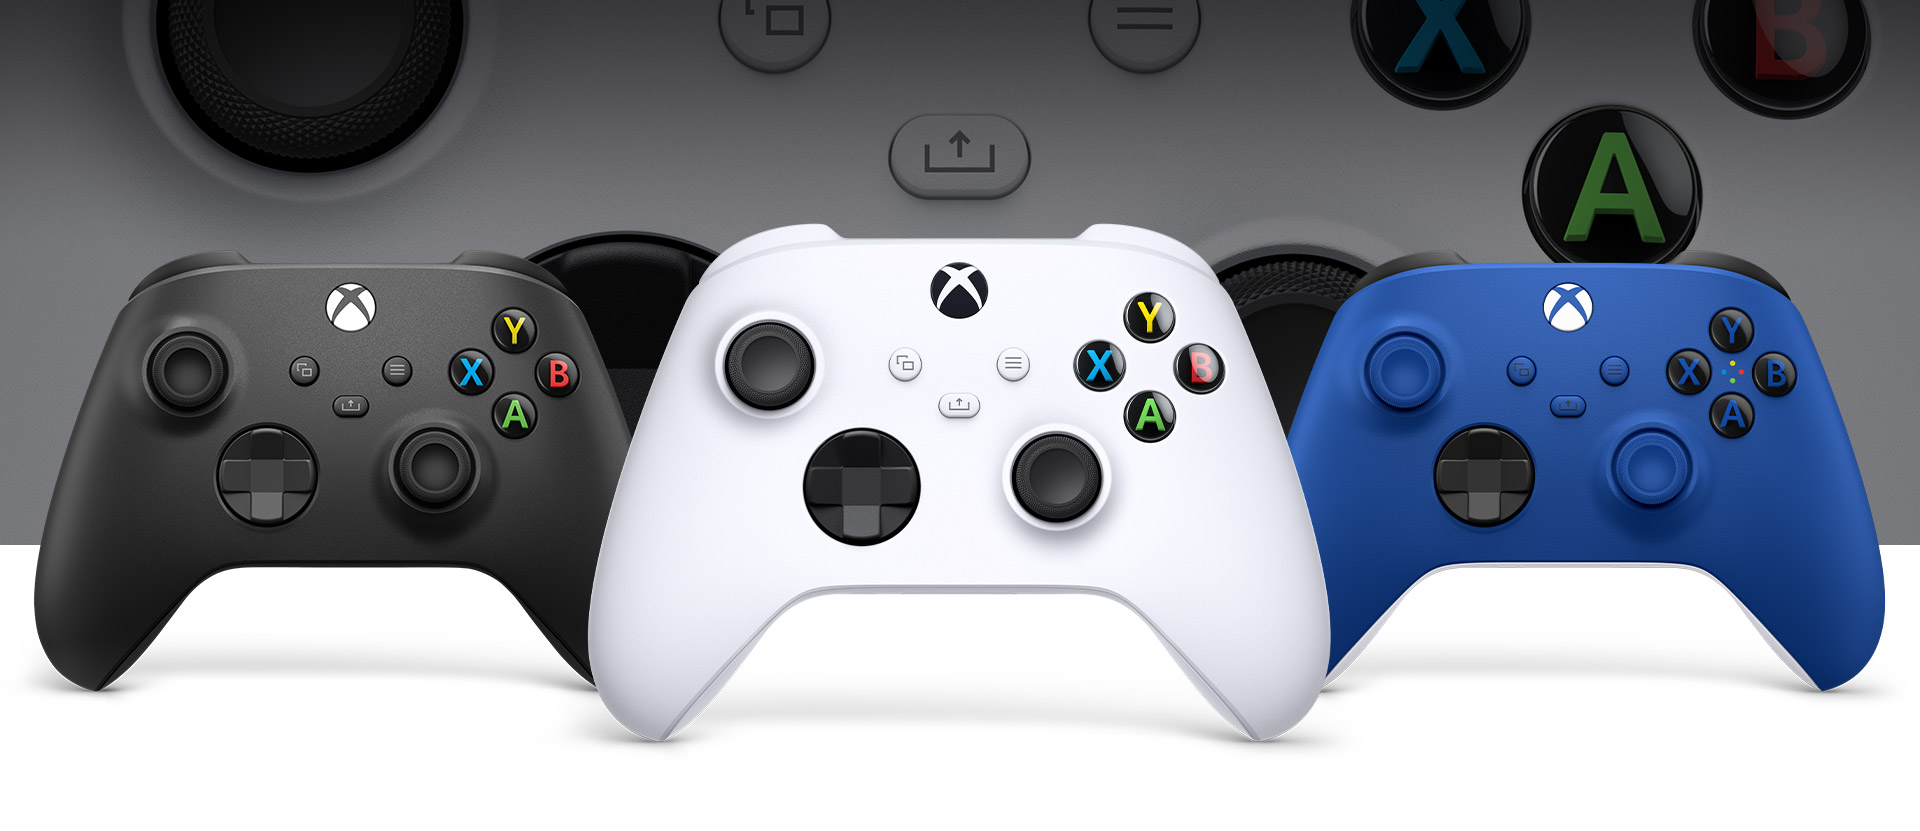 Xbox 機器白控制器在前方，左側是碳黑色控制器，右側是衝擊藍控制器